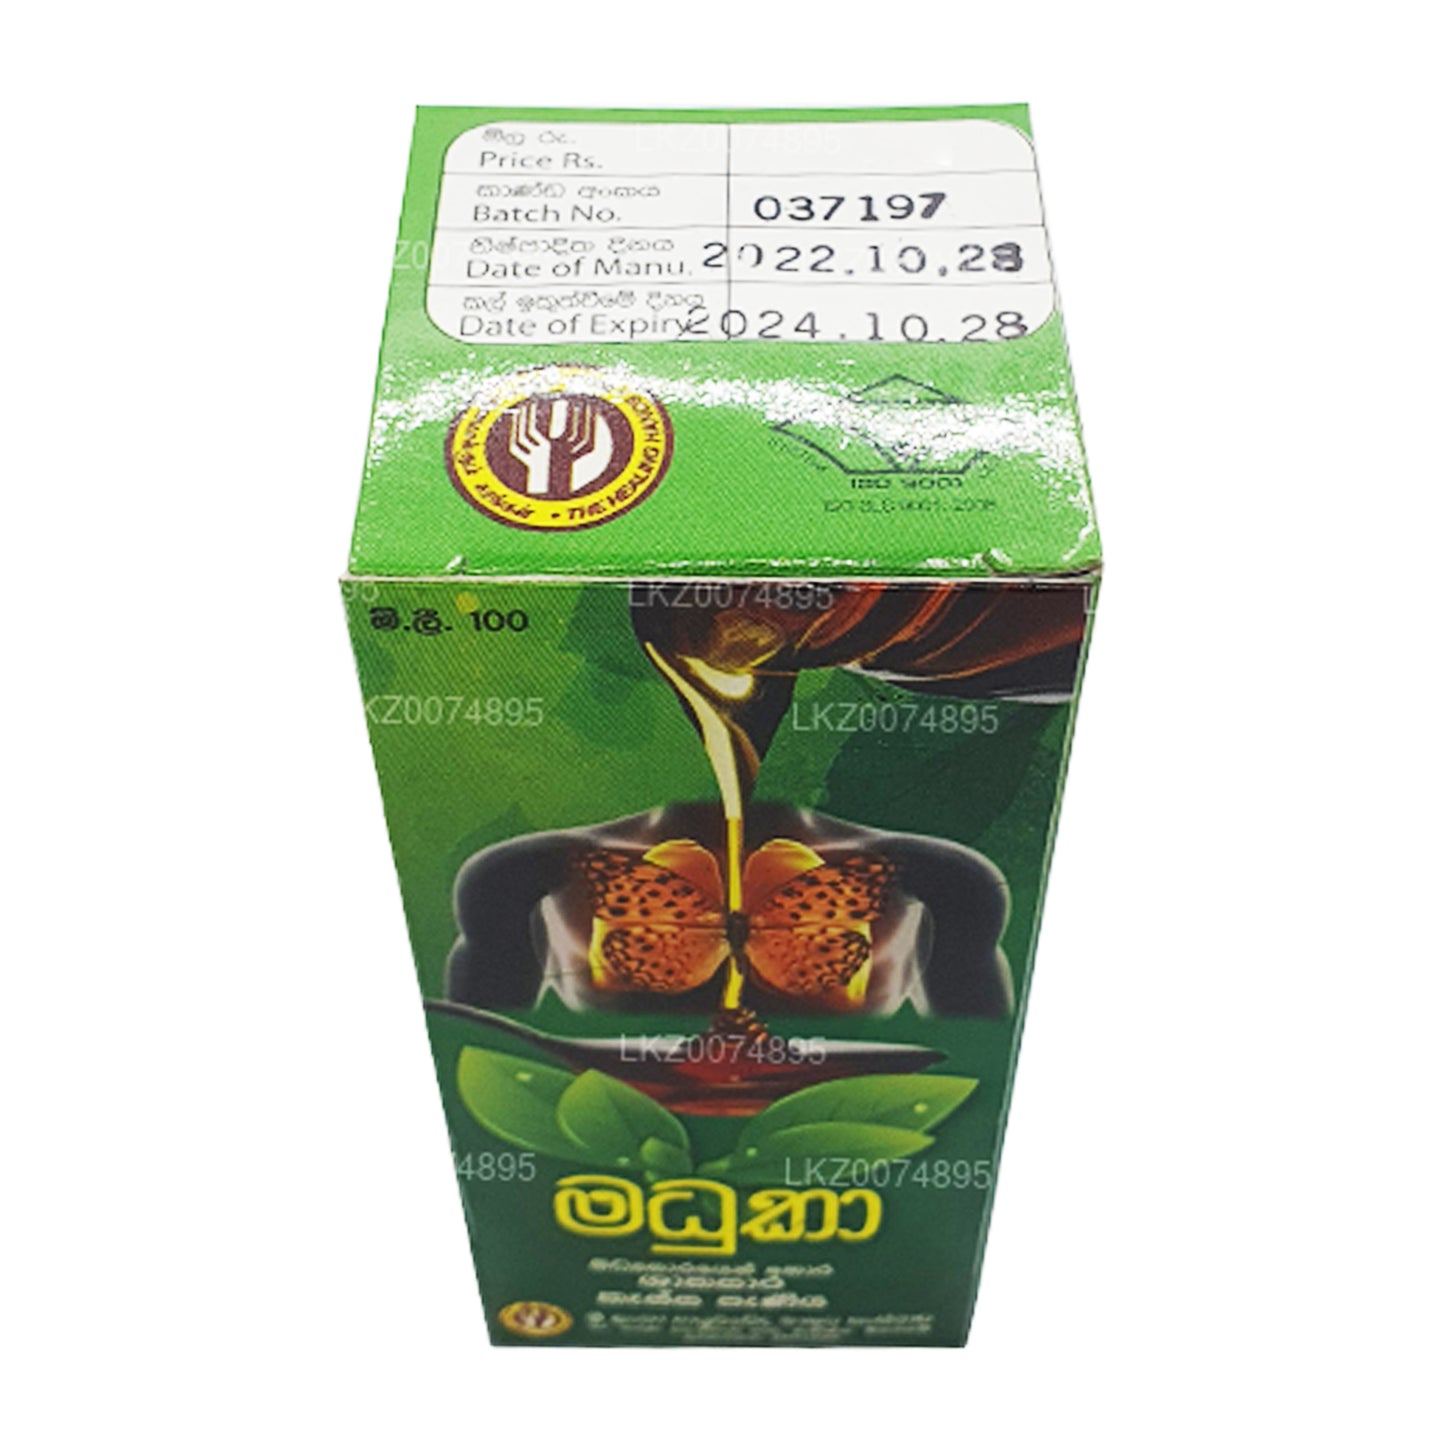 SLADC Madhuka Urte Hostesirup (100 ml)